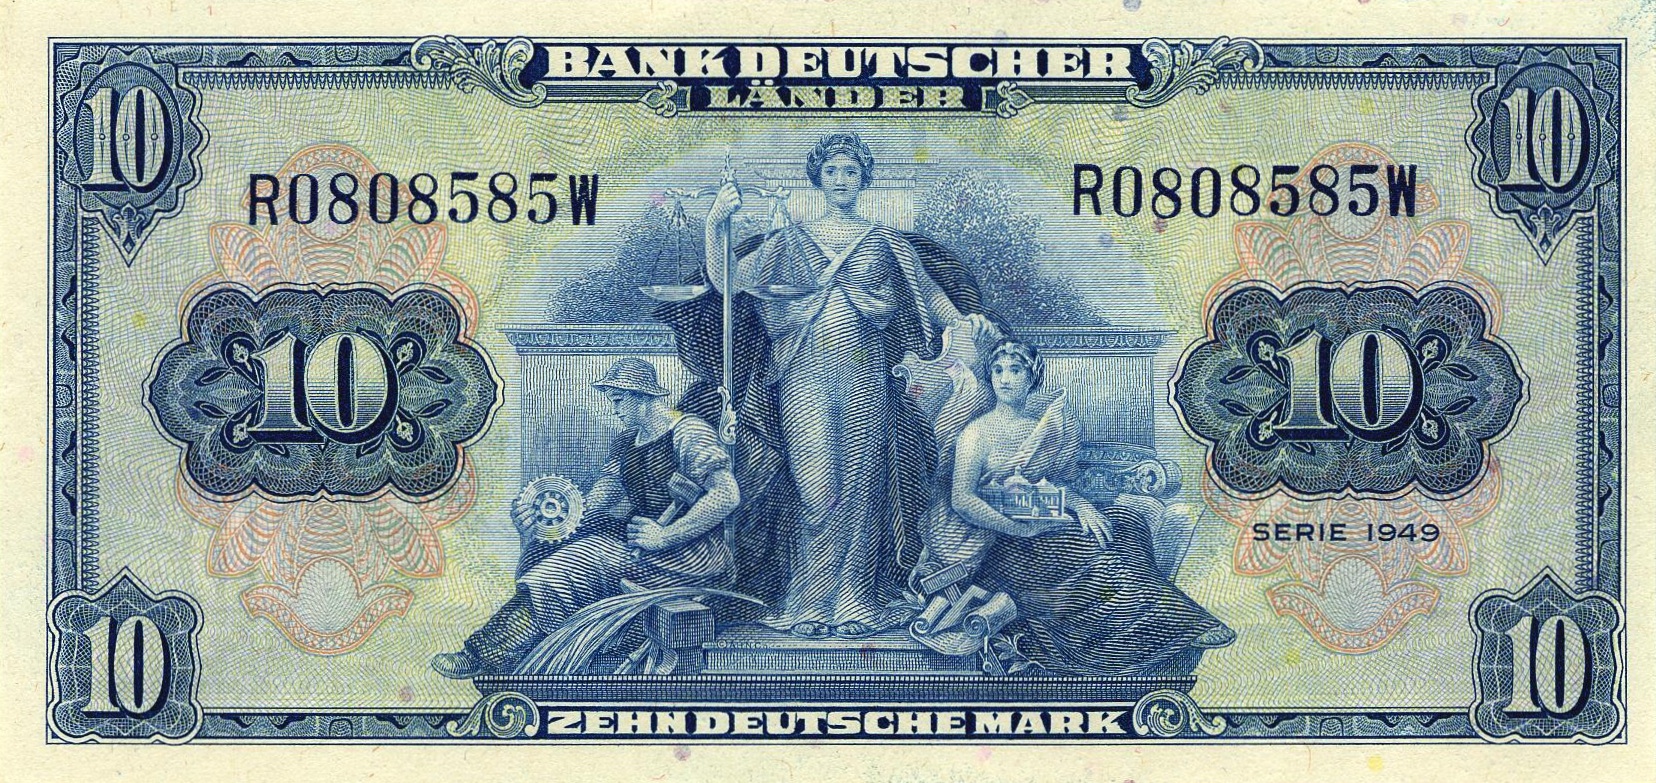 10-deutsche-marks-banknote-bank-deutcher-lander-1949.jpg